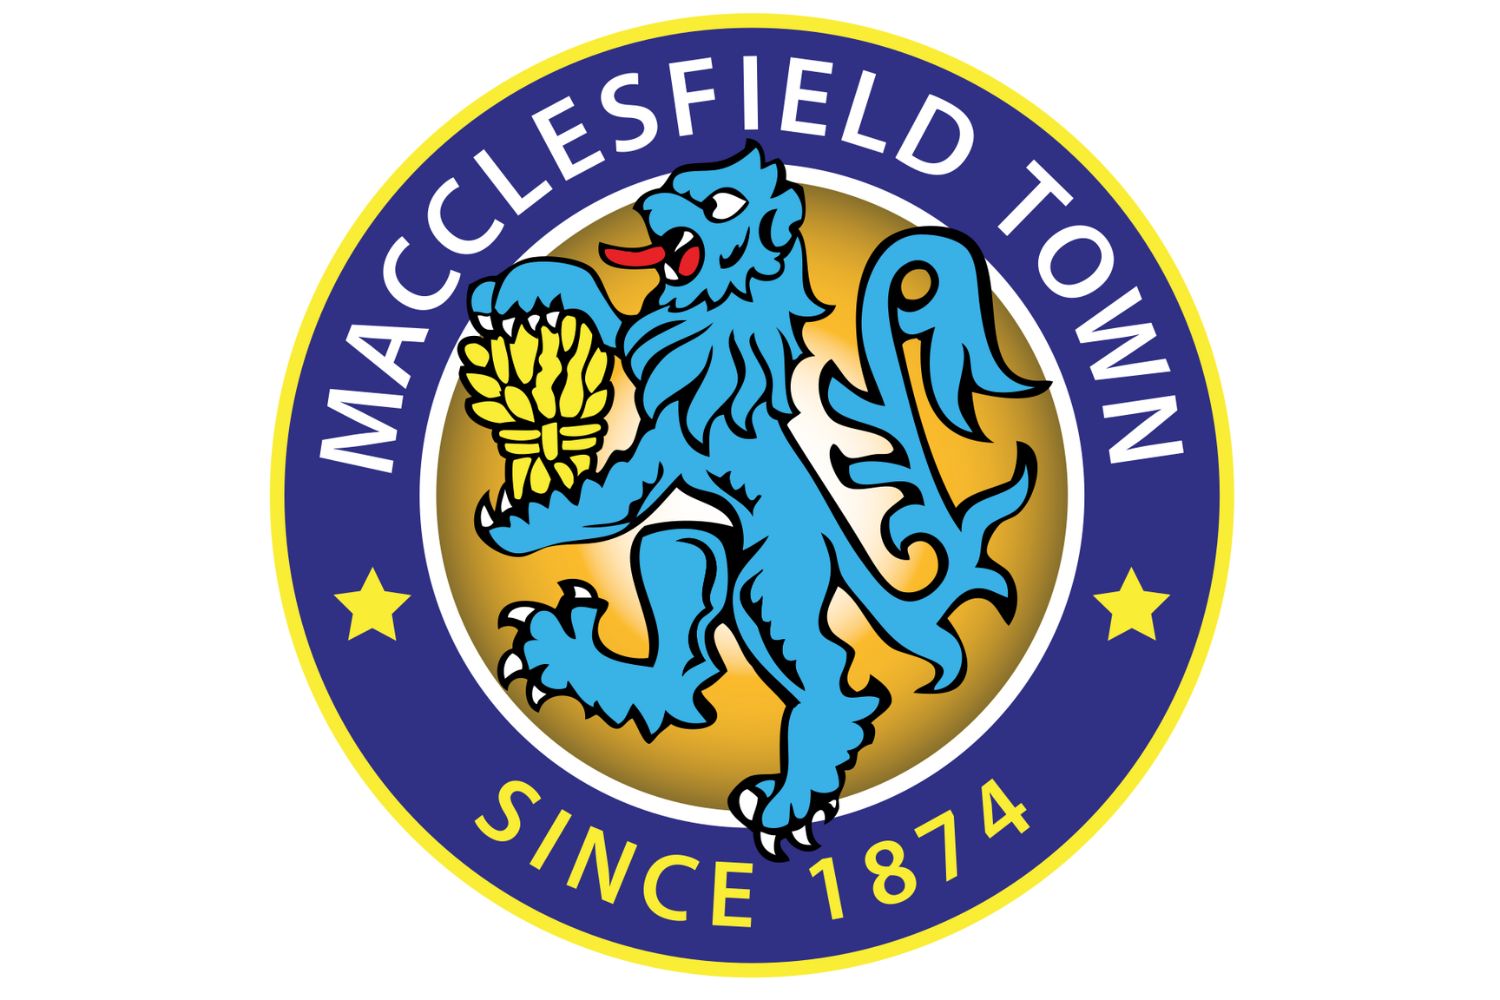 macclesfield-fc-20-football-club-facts